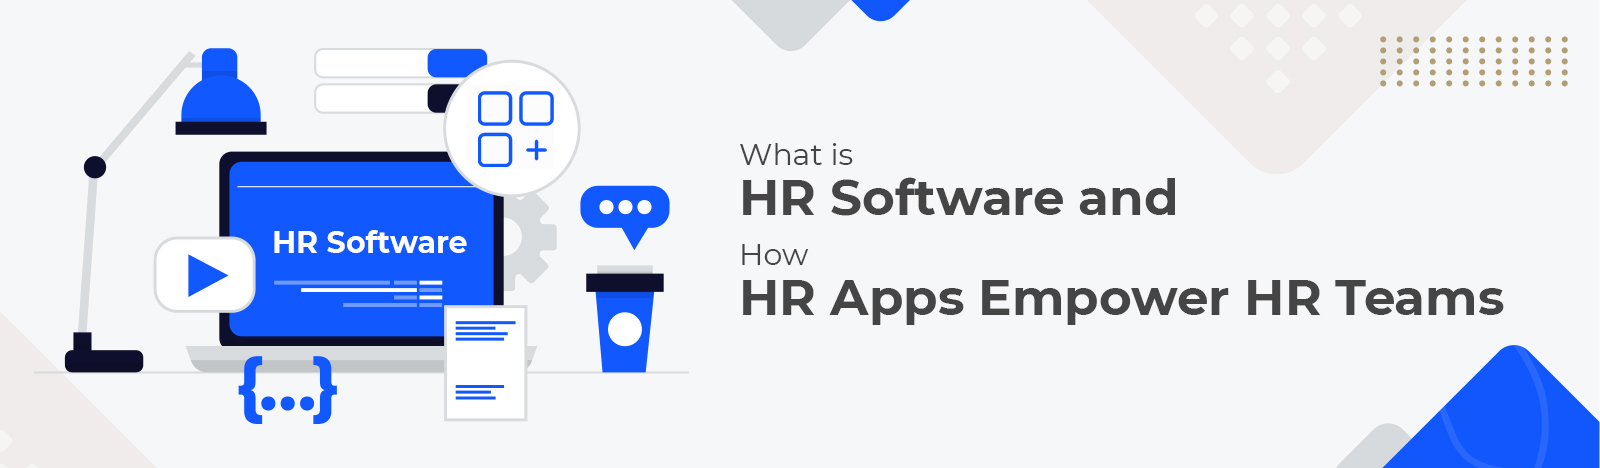 HR Software banner